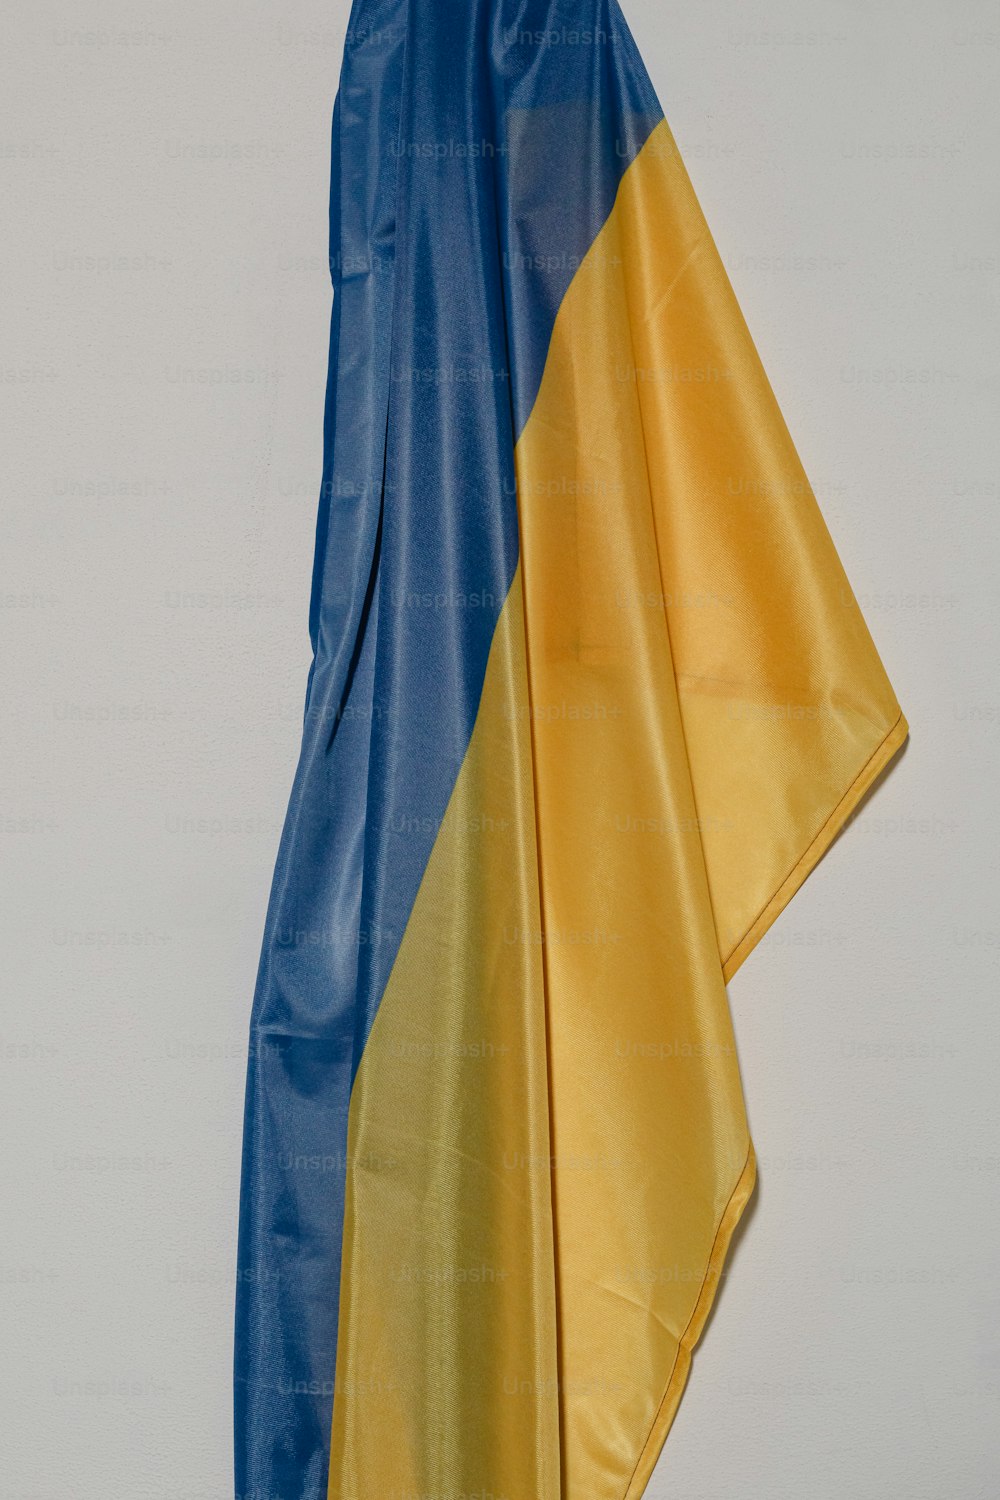 벽에 걸려 있는 파란색과 노란색 깃발